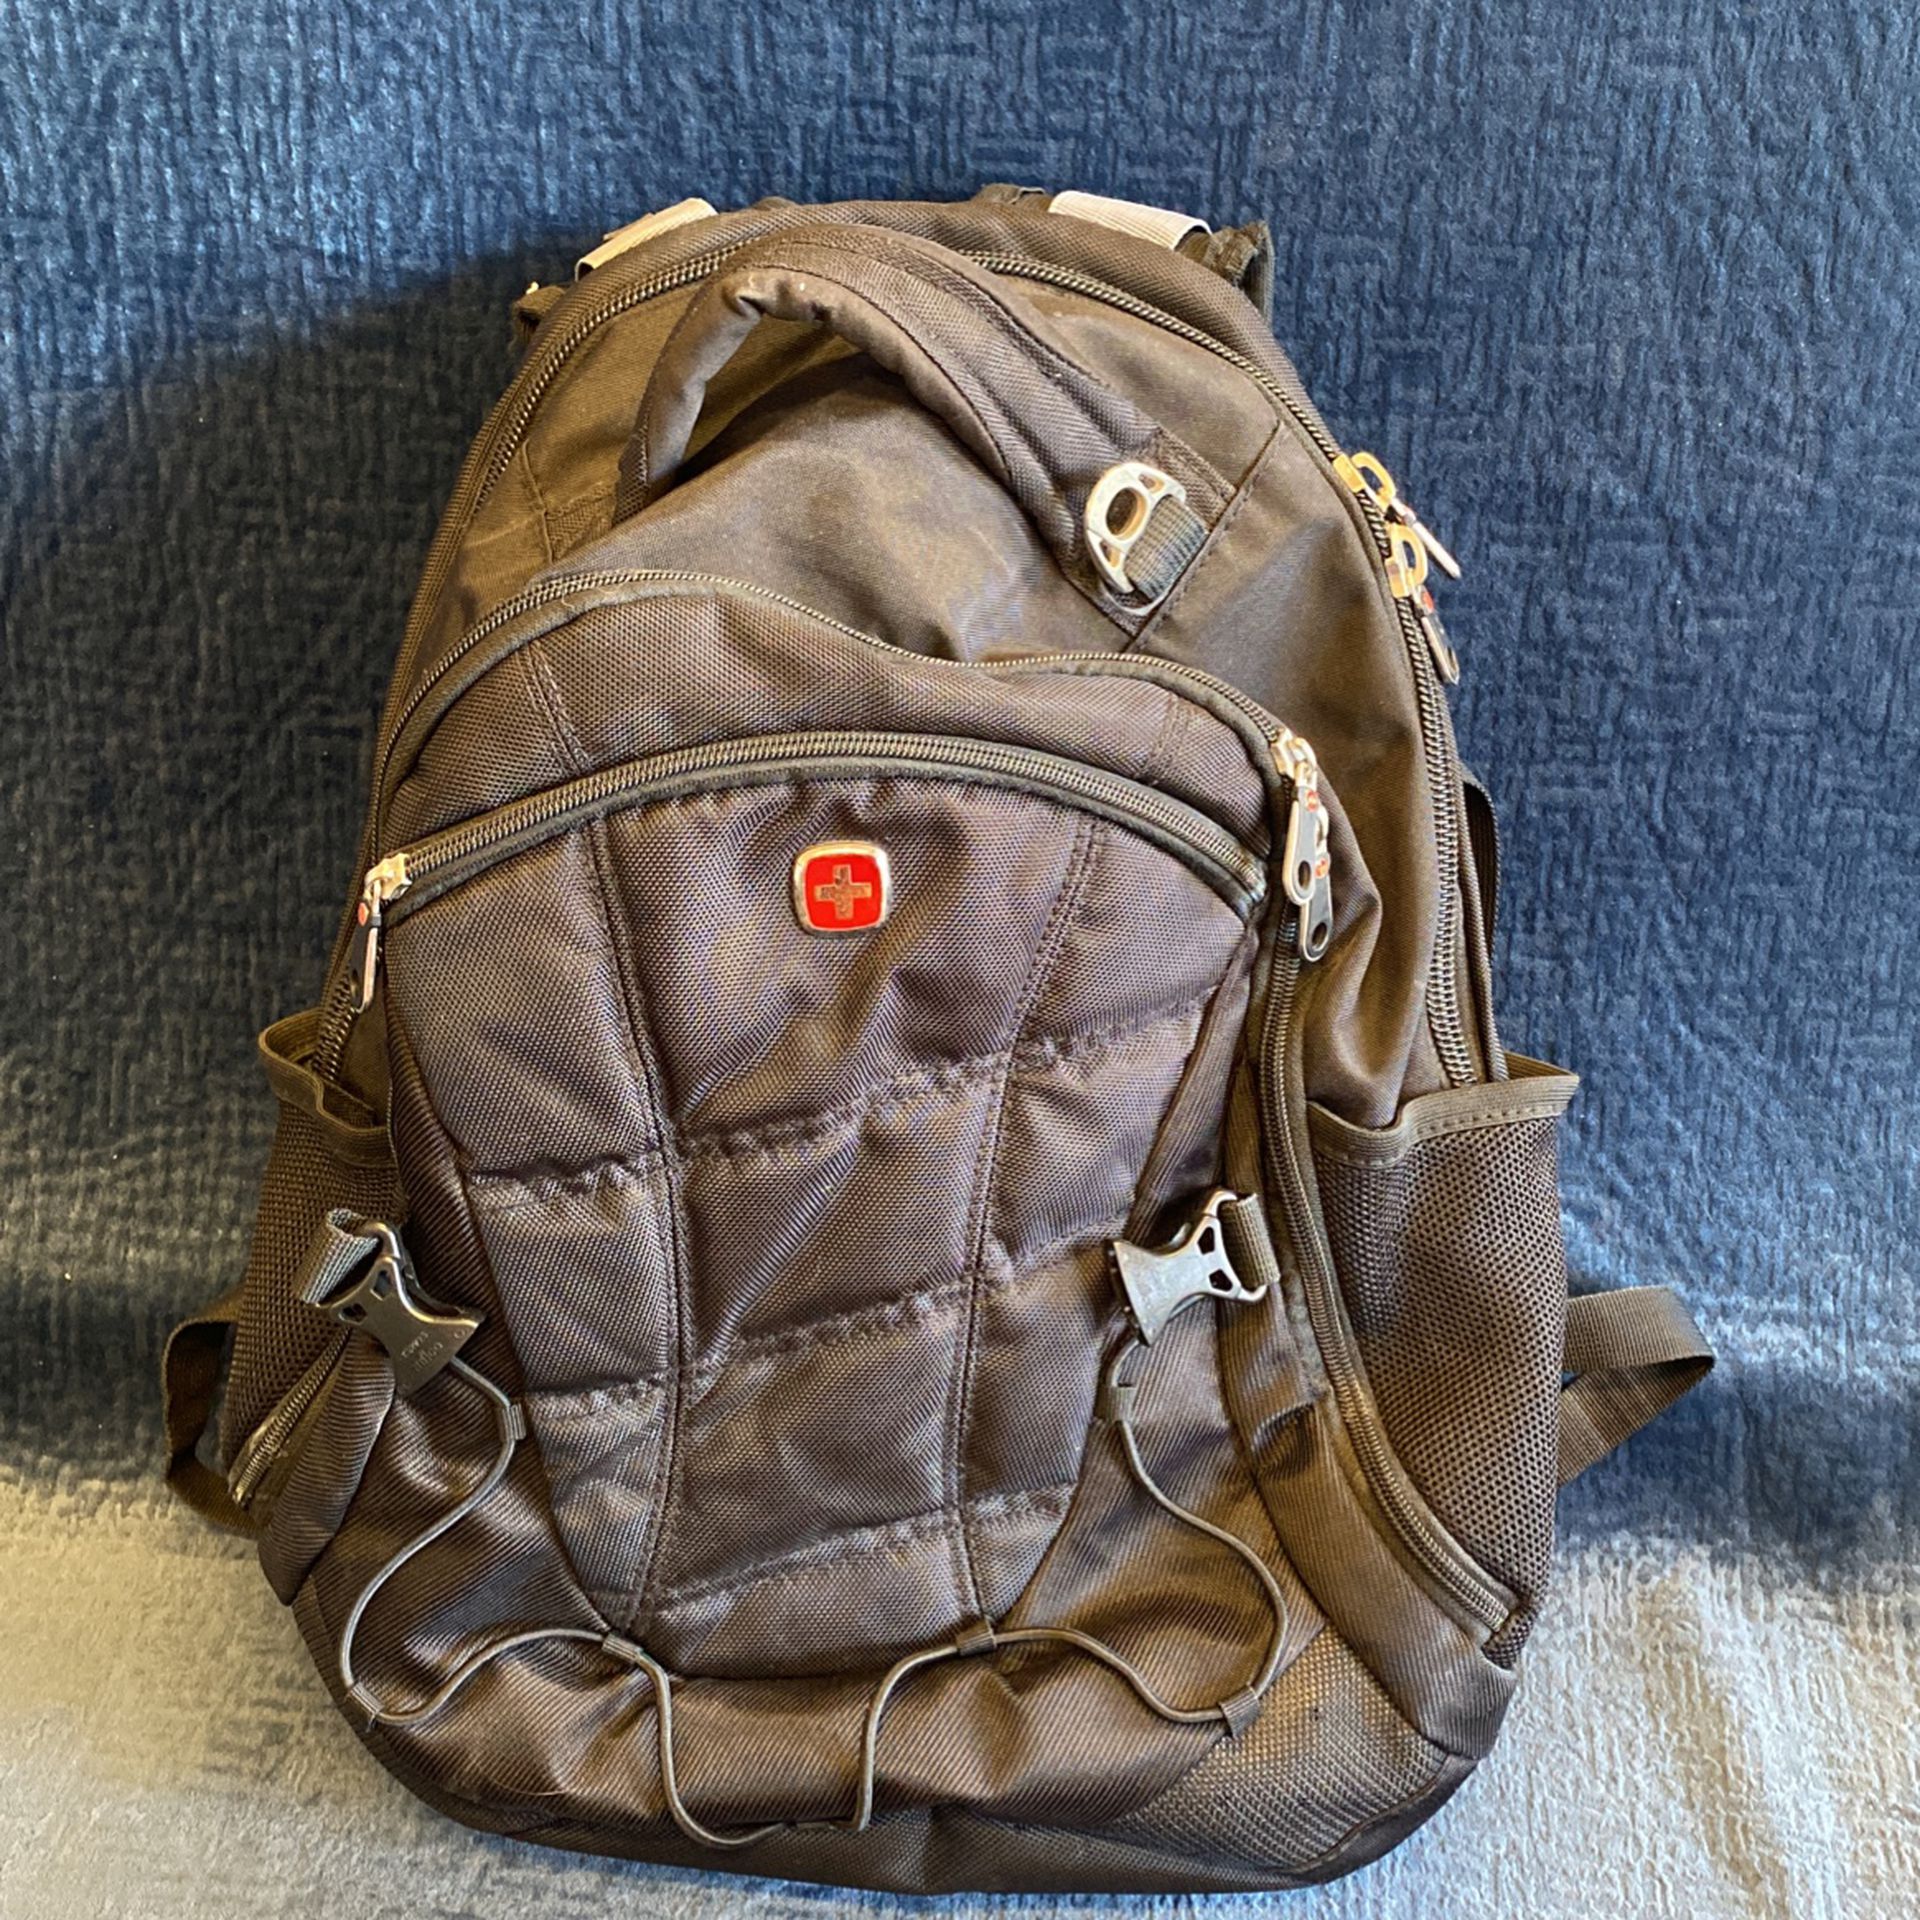 Swiss Backpack